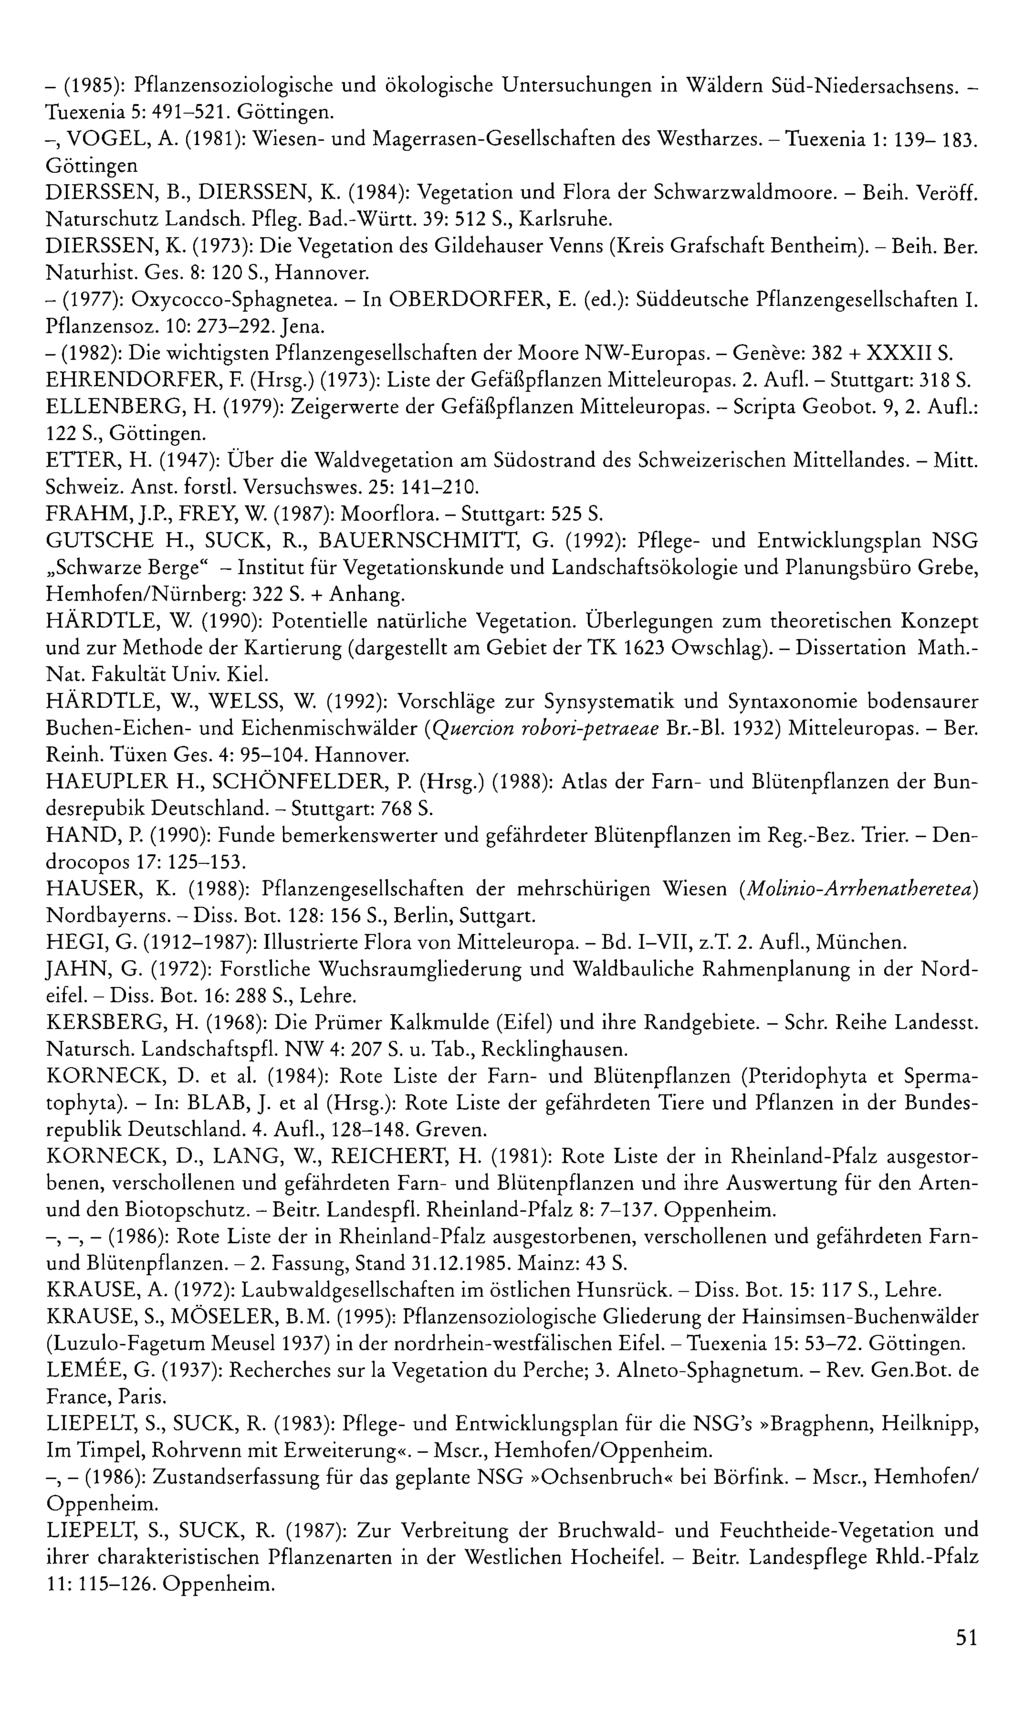 - (985): Pflanzensoziologische und ökologische Untersuchungen in Wäldern Süd-Niedersachsens. - Tuexenia 5: 49-52. Göttingen. -, VOGEL, A. (98): Wiesen- und Magerrasen-Gesellschaften des Westharzes.